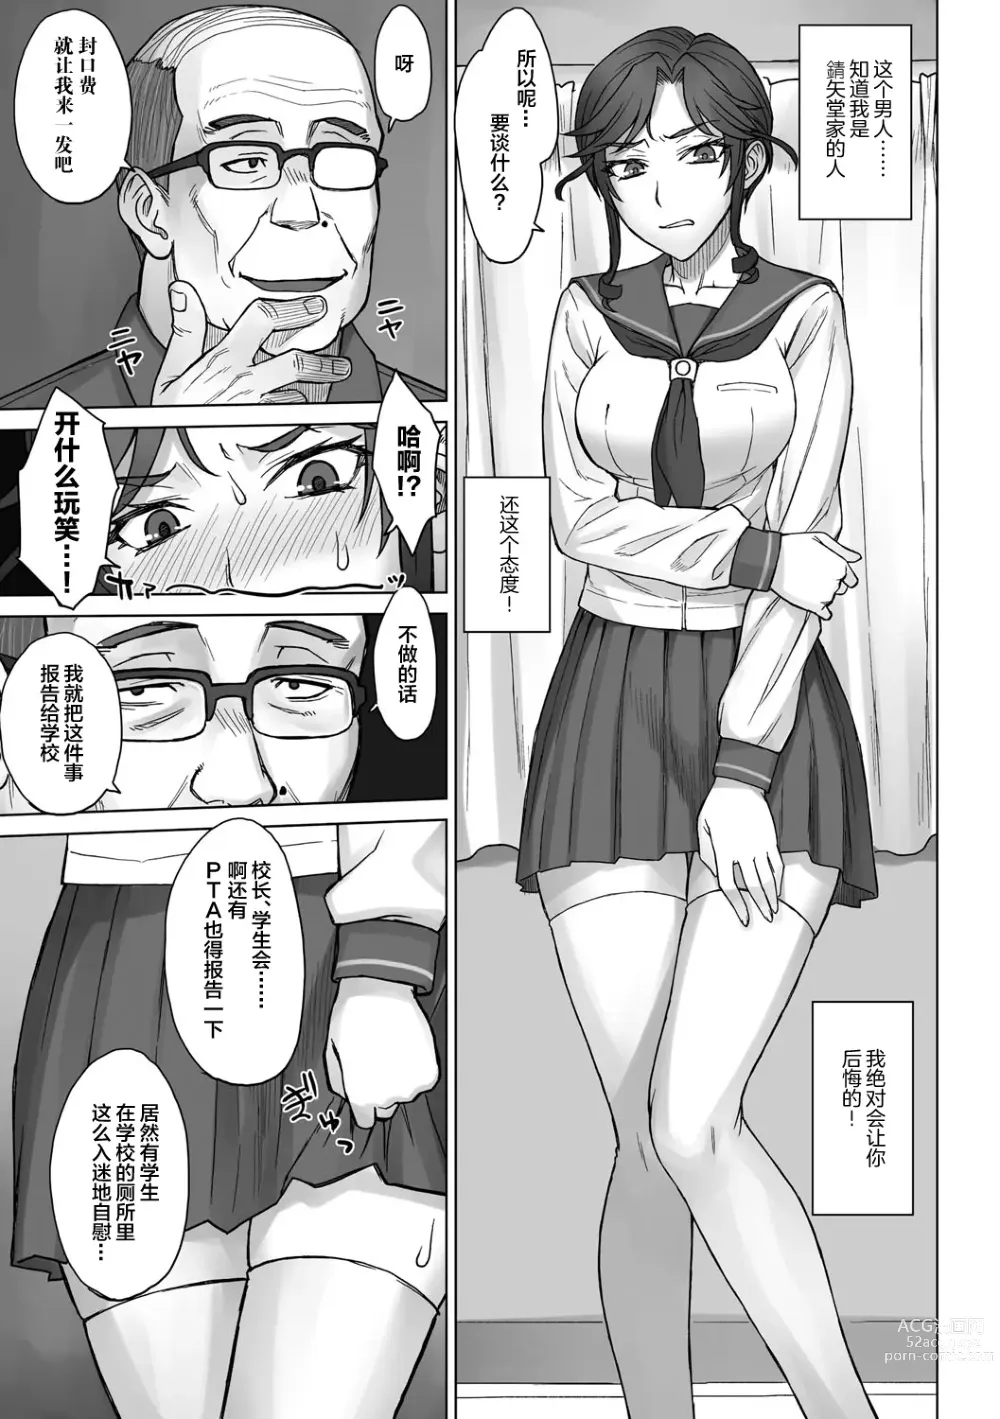 Page 7 of doujinshi Ojou-sama Chiharu VS Dekachin Oji-san + Dekachin Oji-san after